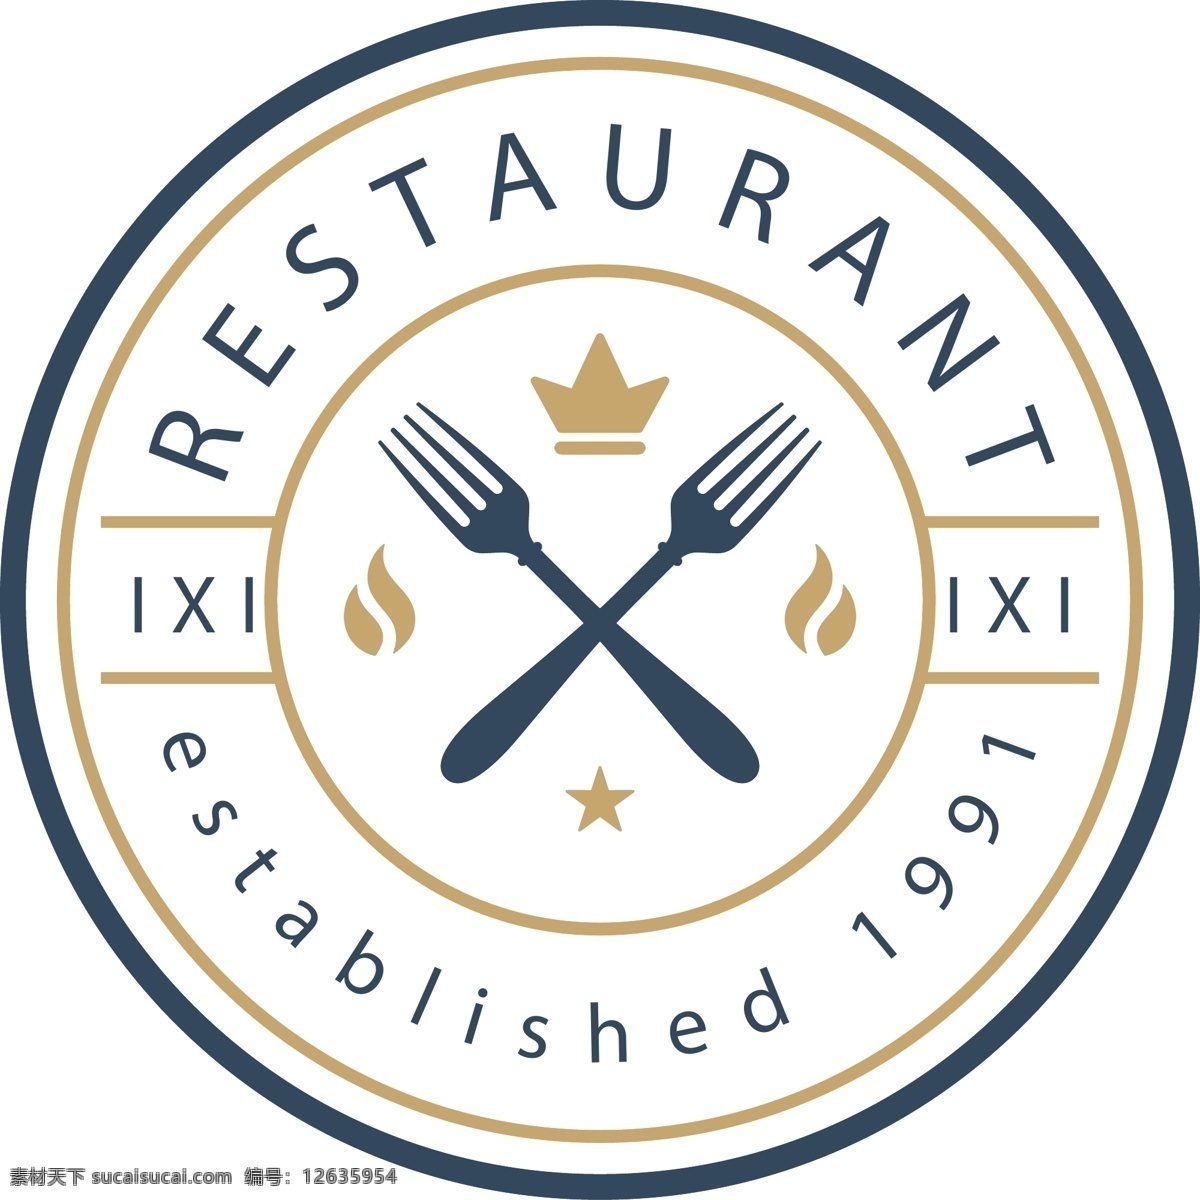 复古 饮食 餐厅 logo 复古logo 标志 标志设计 矢量素材 创意标志 简约 企业logo 图标 标志图标 品牌标志 图标设计 公司标志